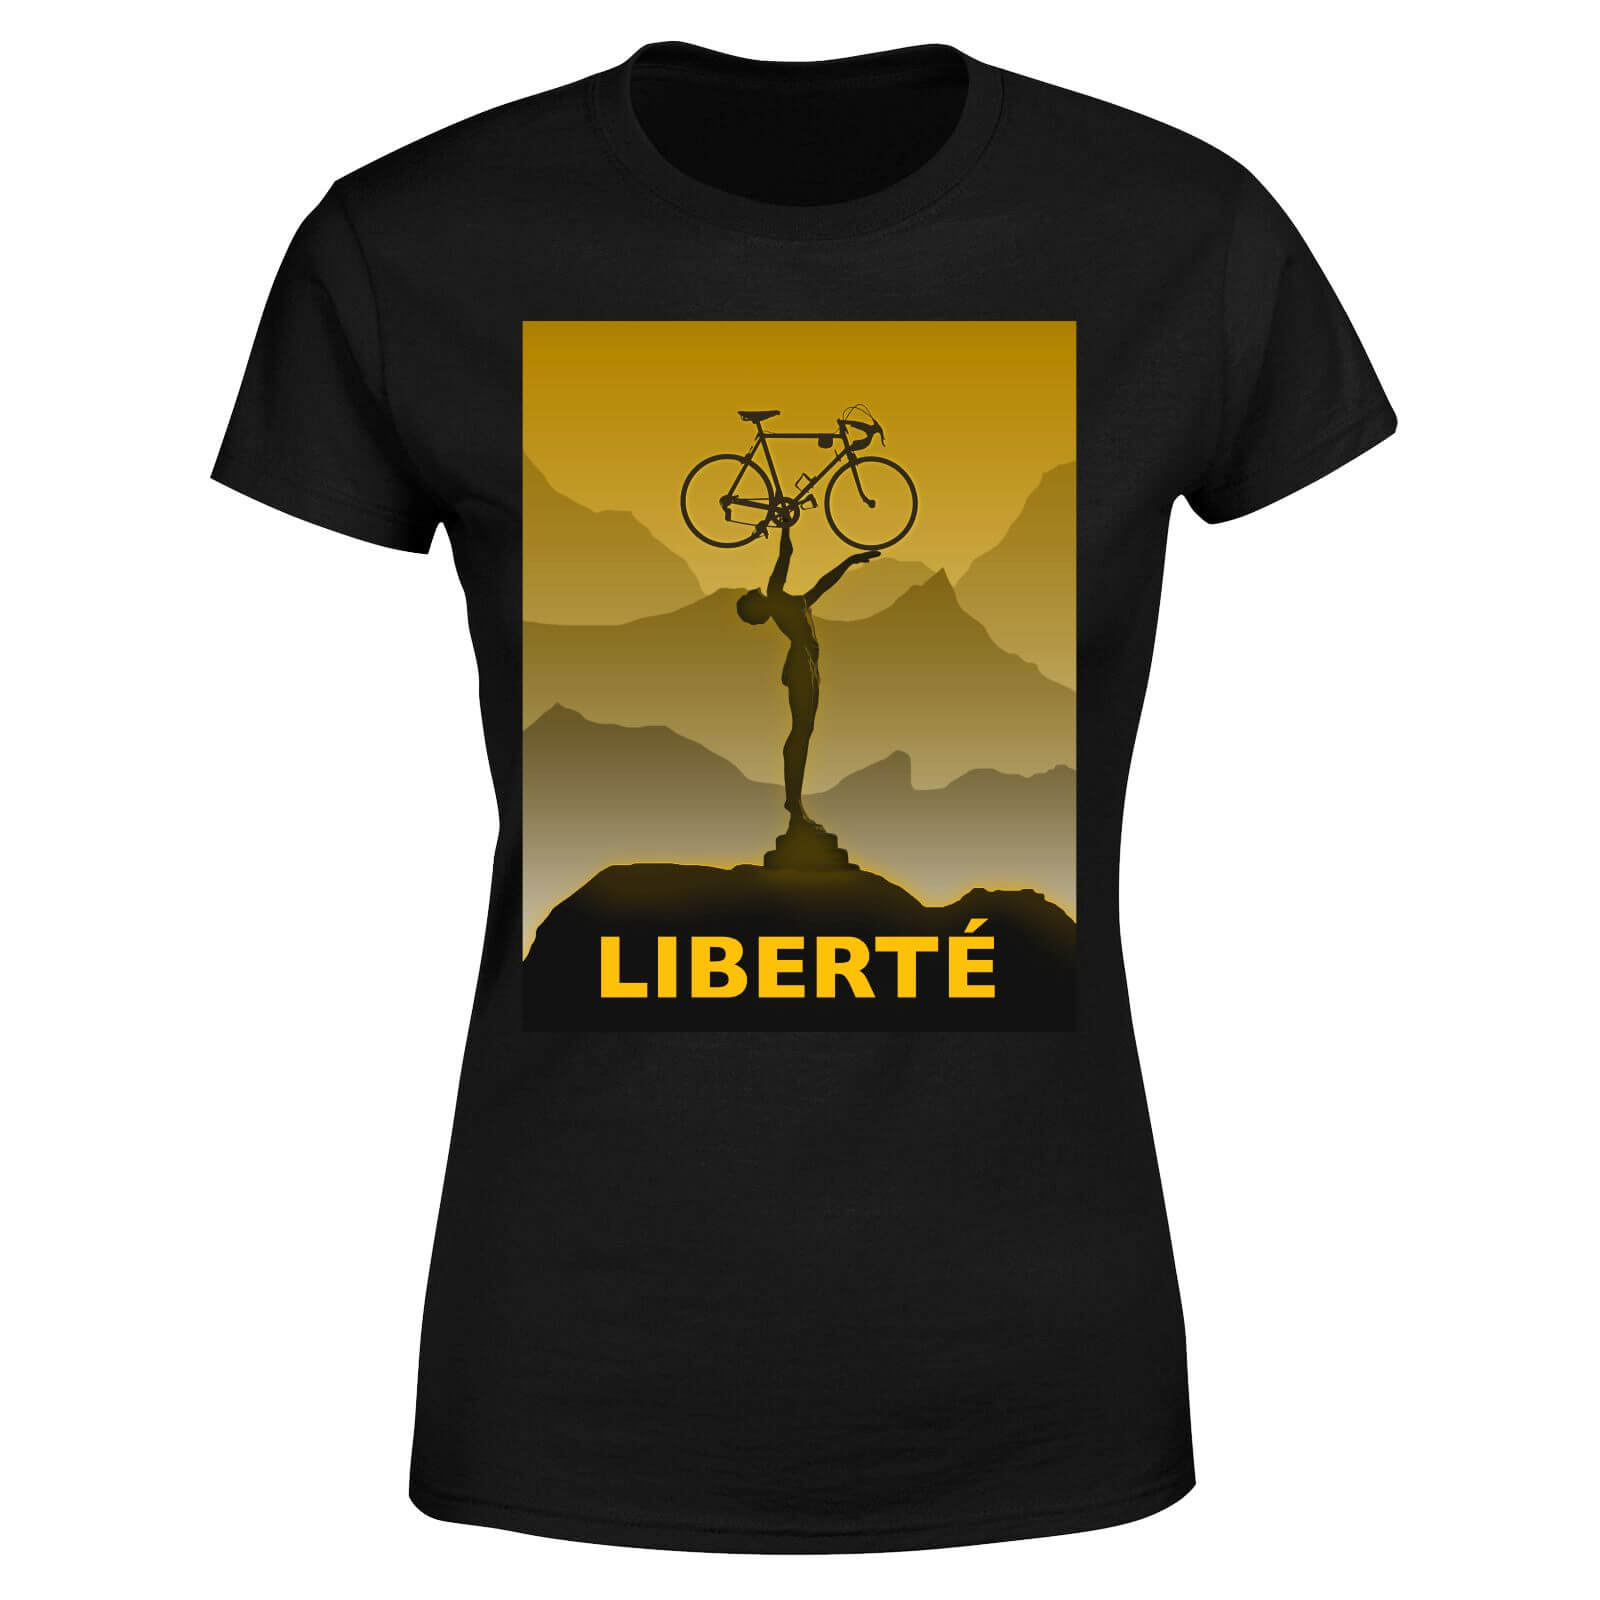 Liberte Women's T-Shirt - Black - XS - Black